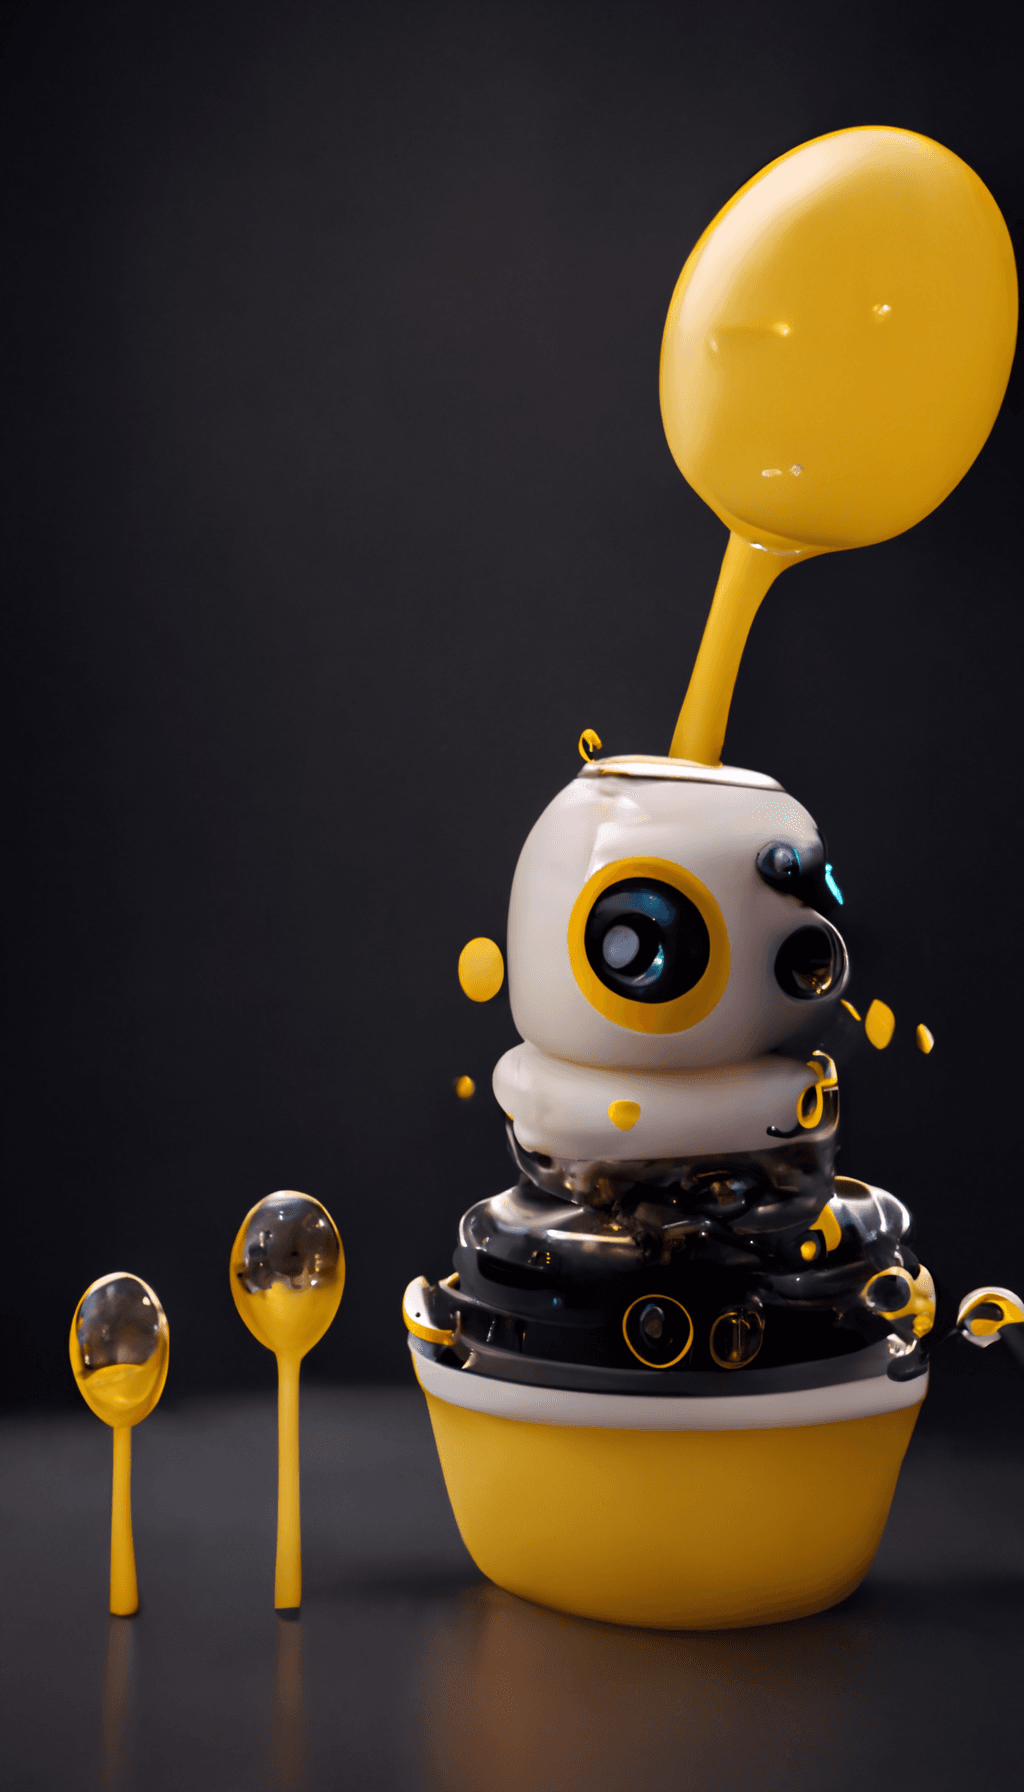 Personal Robot #11: Auto-Measuring Spoonie